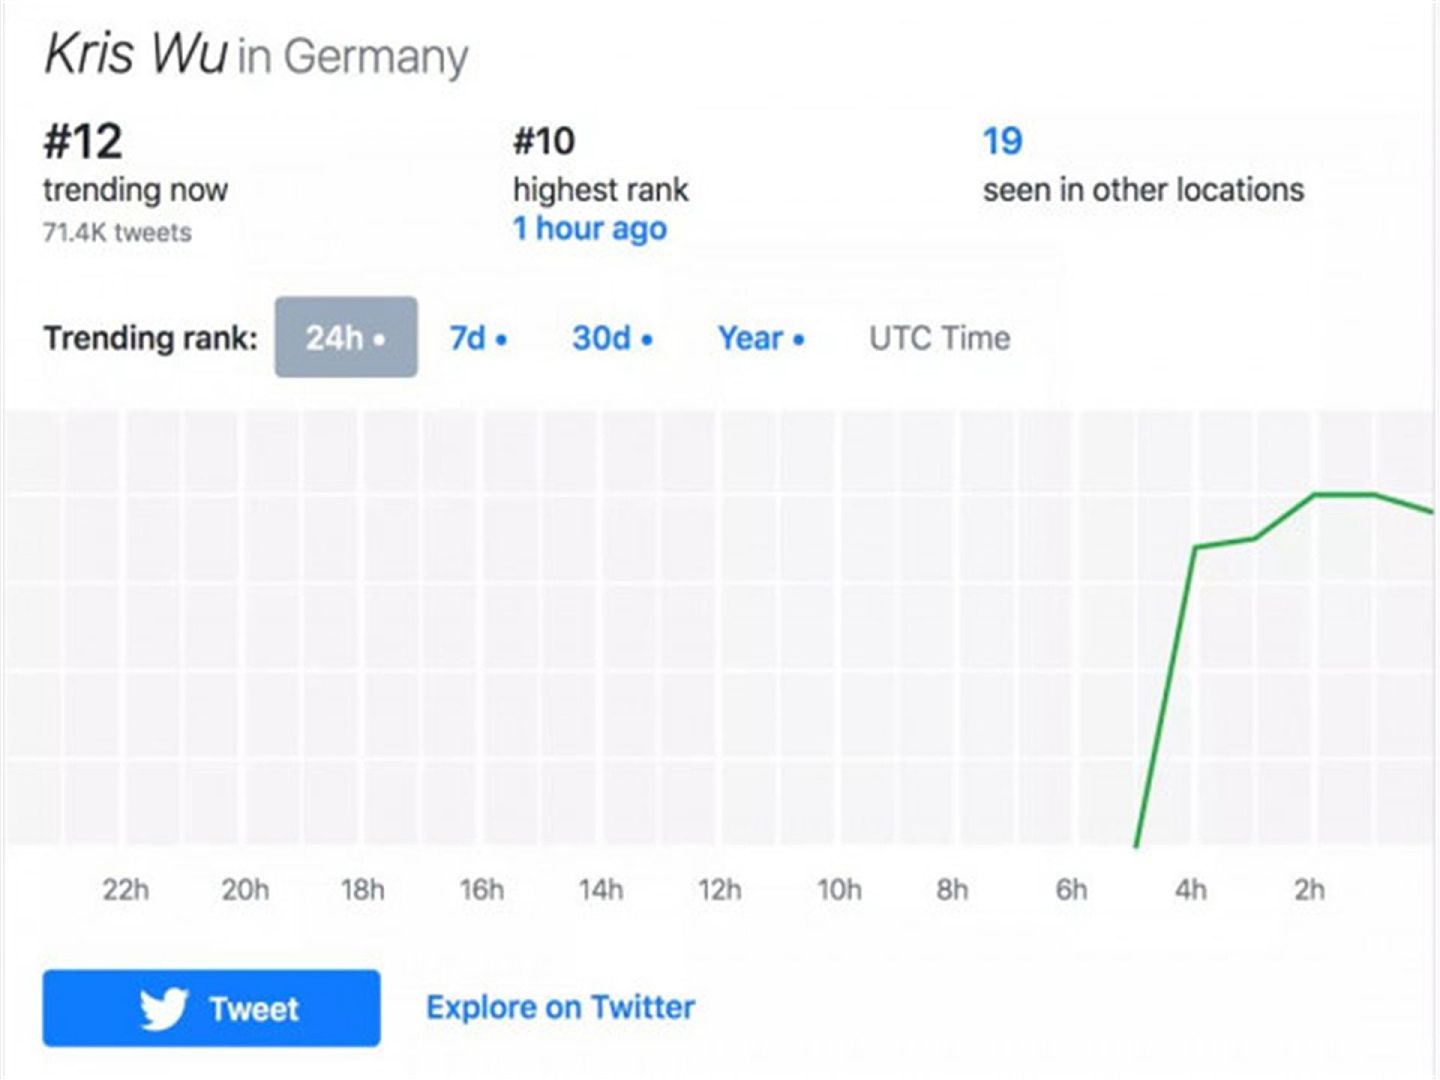 这是吴亦凡在德国趋势榜的排名数据。（微信公众号@这里是美国）